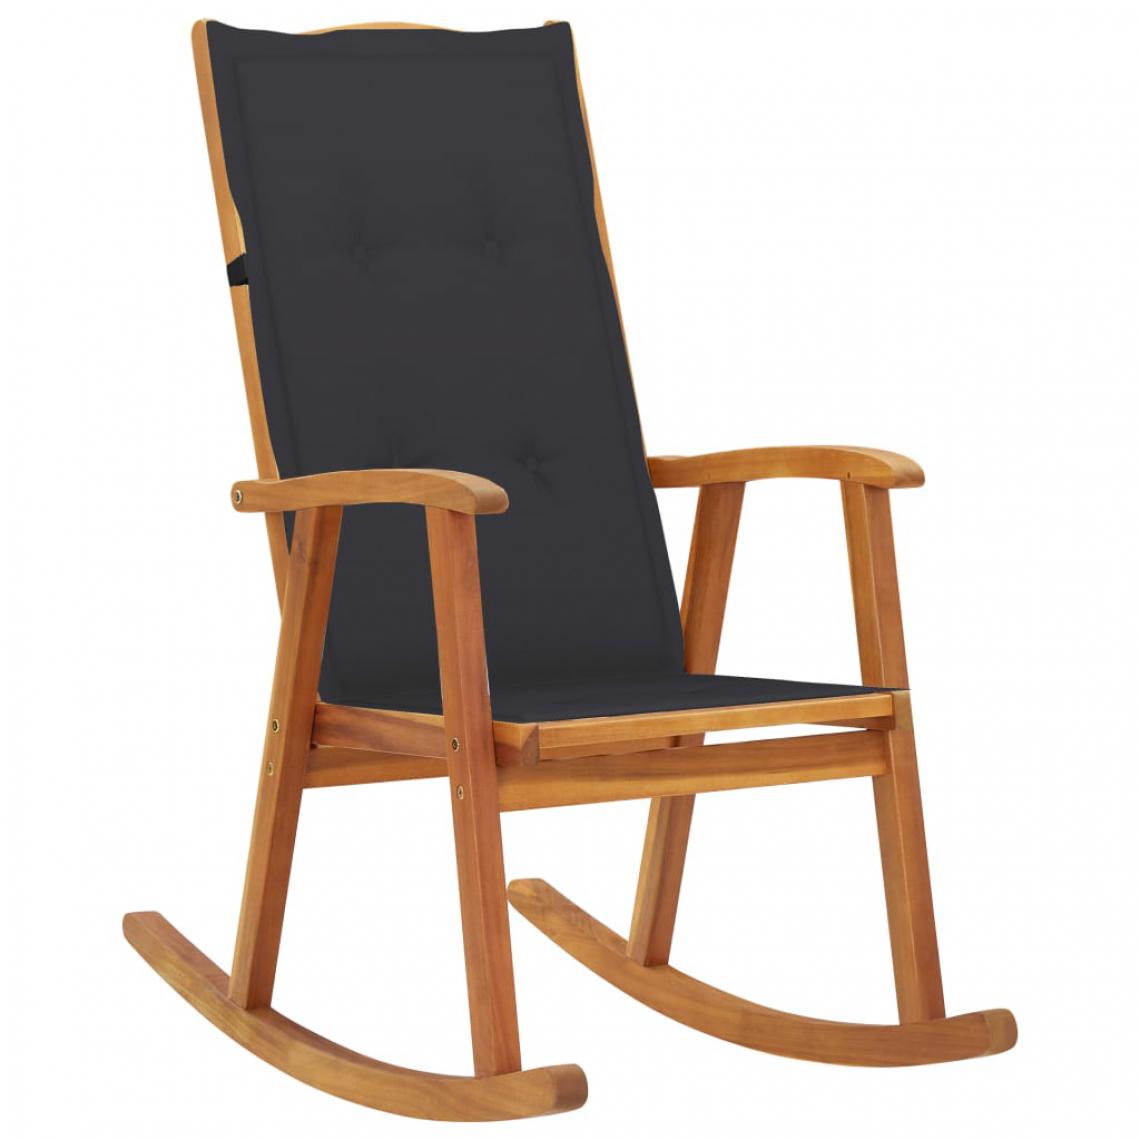 Uco - UCO Chaise à bascule avec coussins Bois d'acacia massif - Chaises